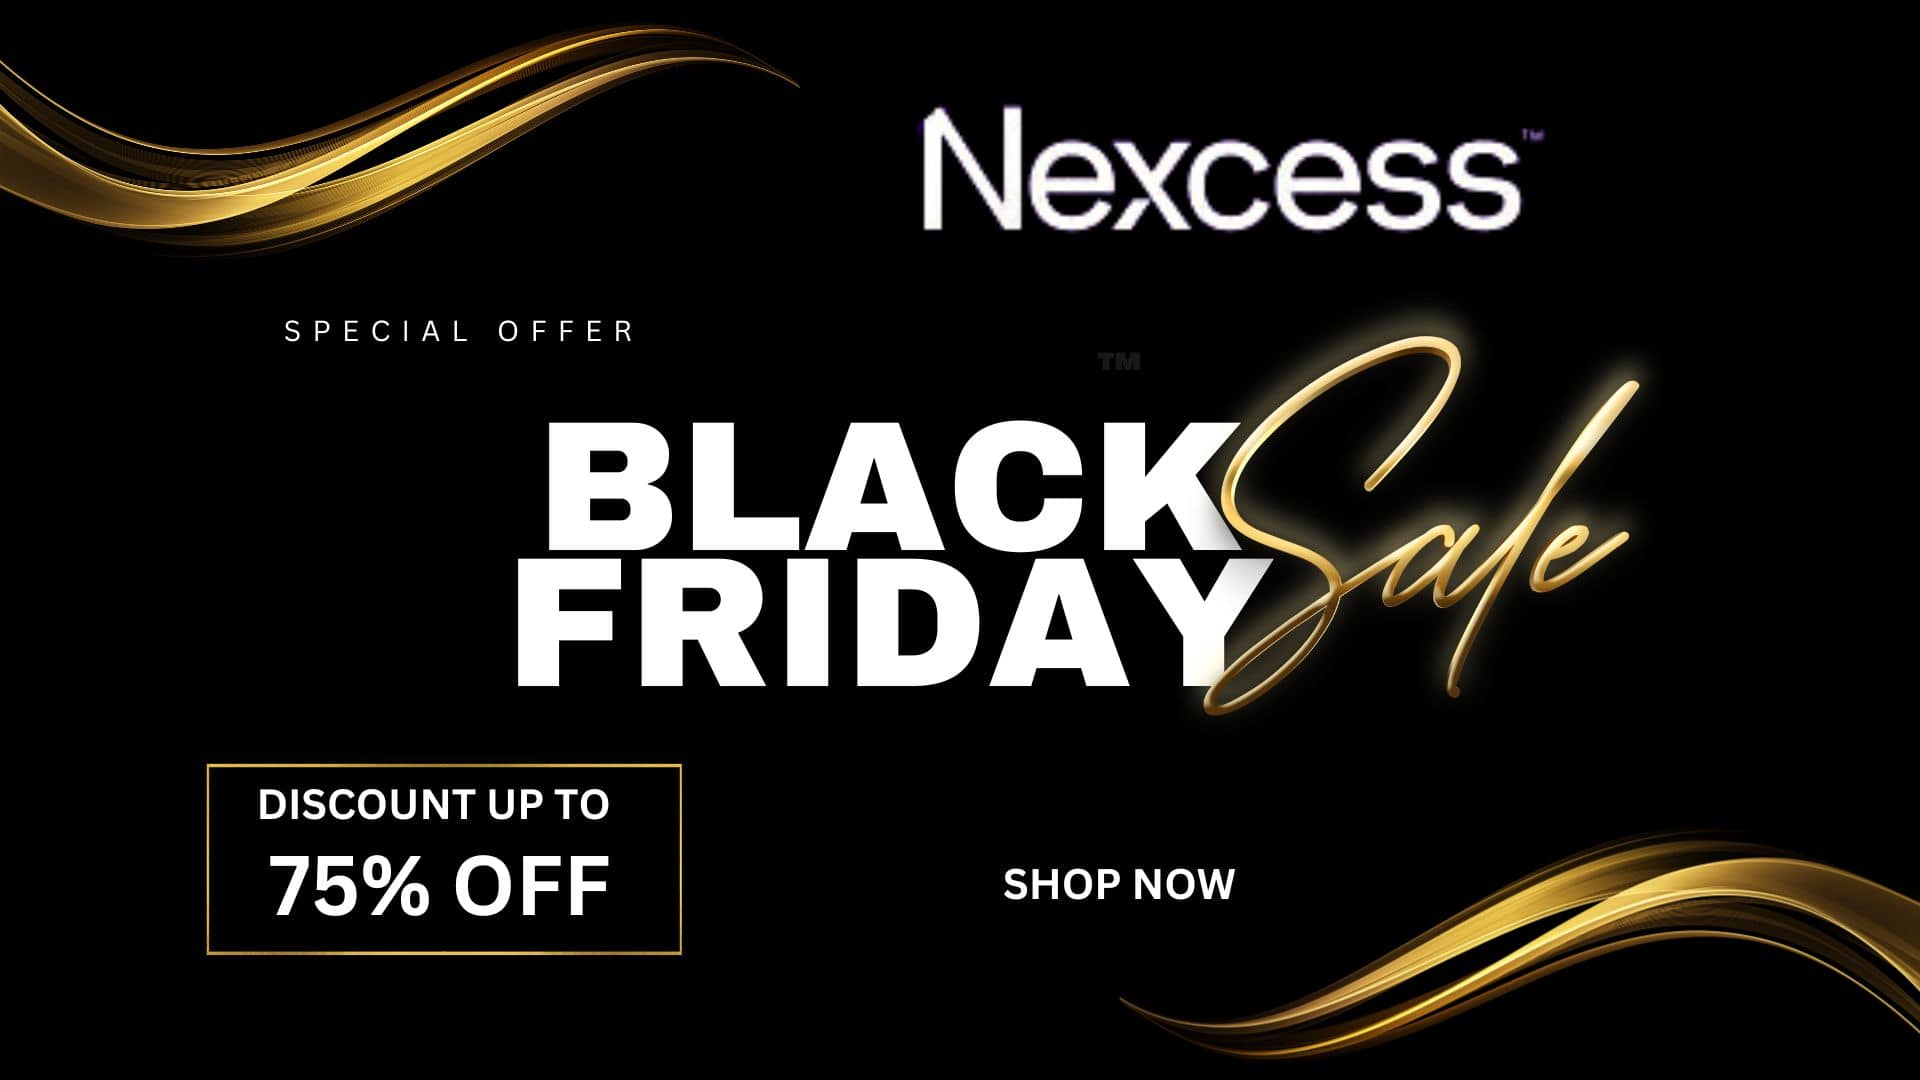 nexcess black friday deal